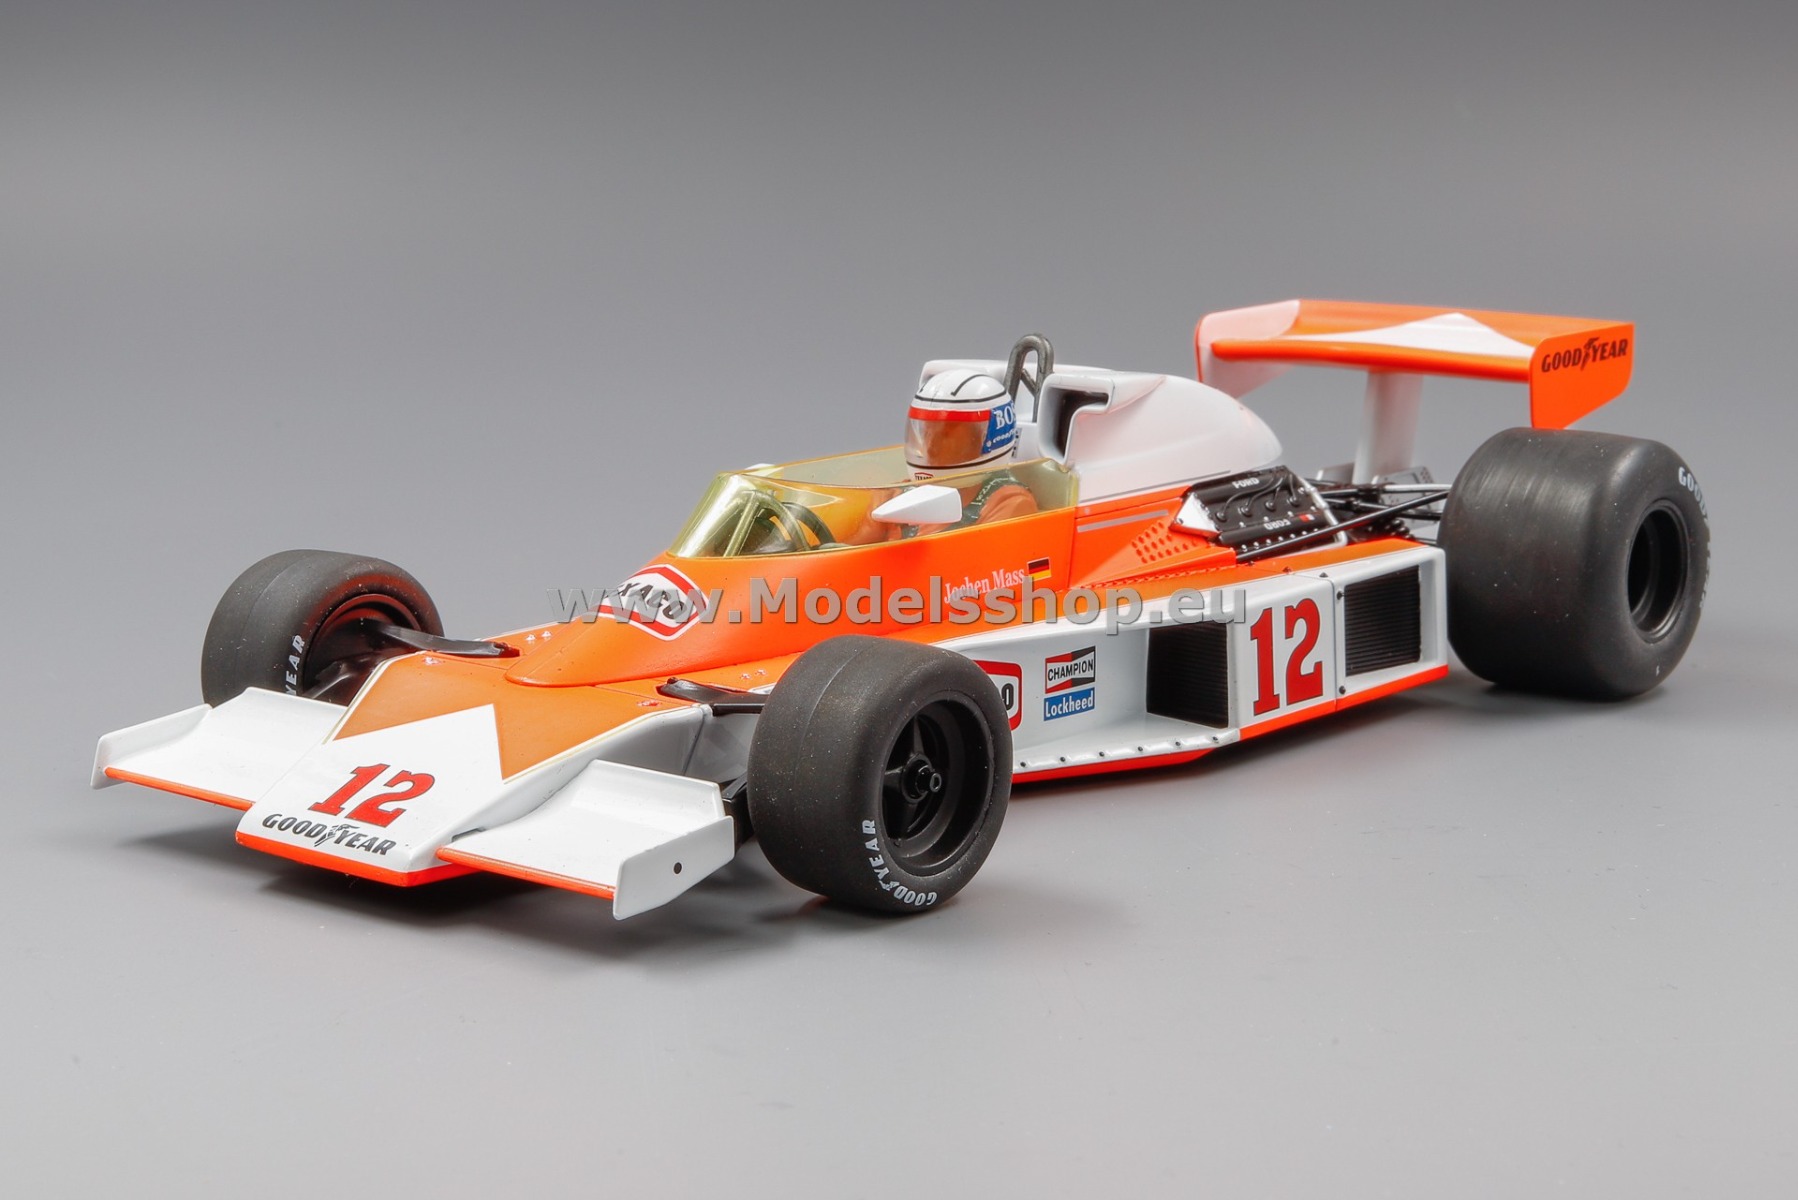 MCG 18613F McLaren M23, No.12, Marlboro team McLaren, Formula 1, GP Germany 1976, J.Mass (with decals)